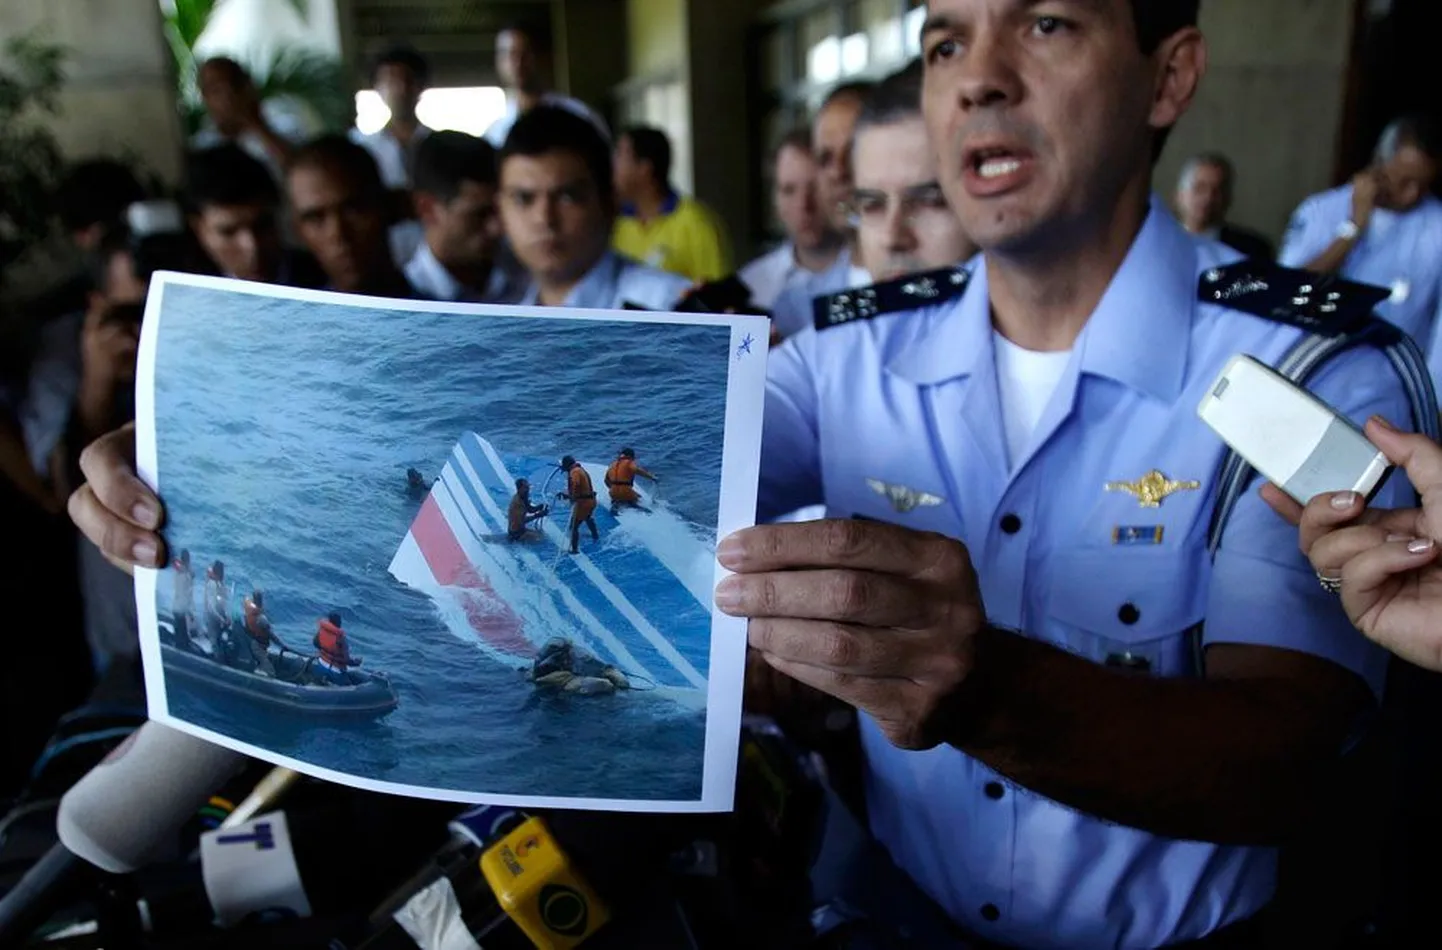 Представитель ВВС Бразилии Энри Мундуж на пресс-конференции показывает фотографии, где изображено, как из океана достают кусок    хвоста пропавшего самолета Airbus.